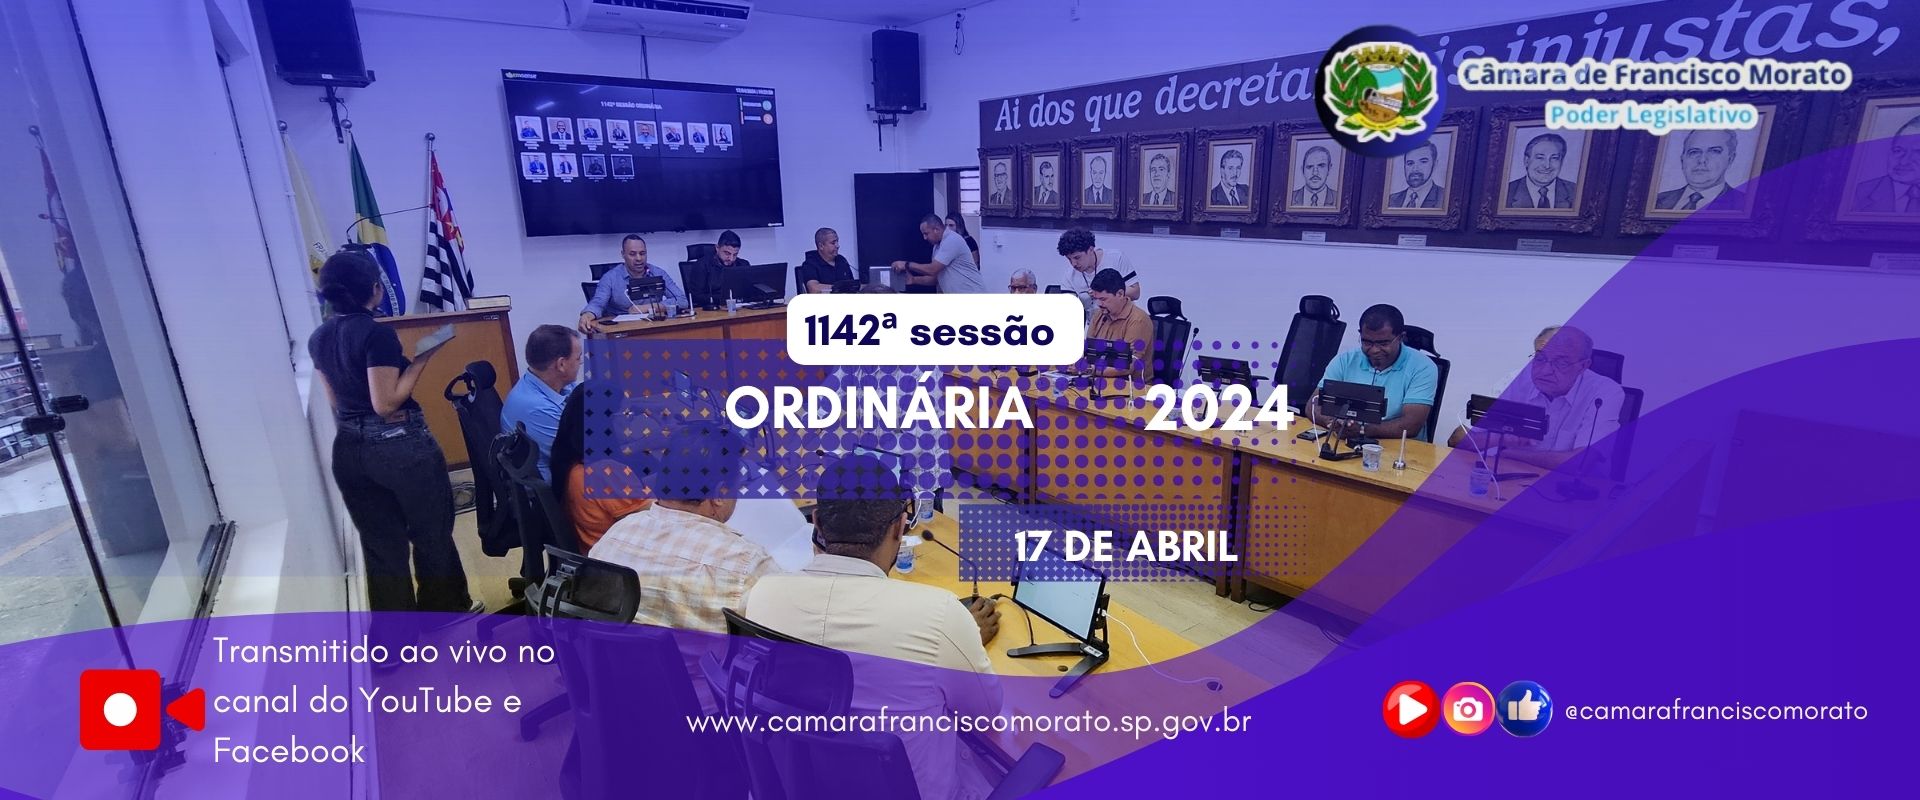 1142ª SESSÃO ORDINÁRIA 2024